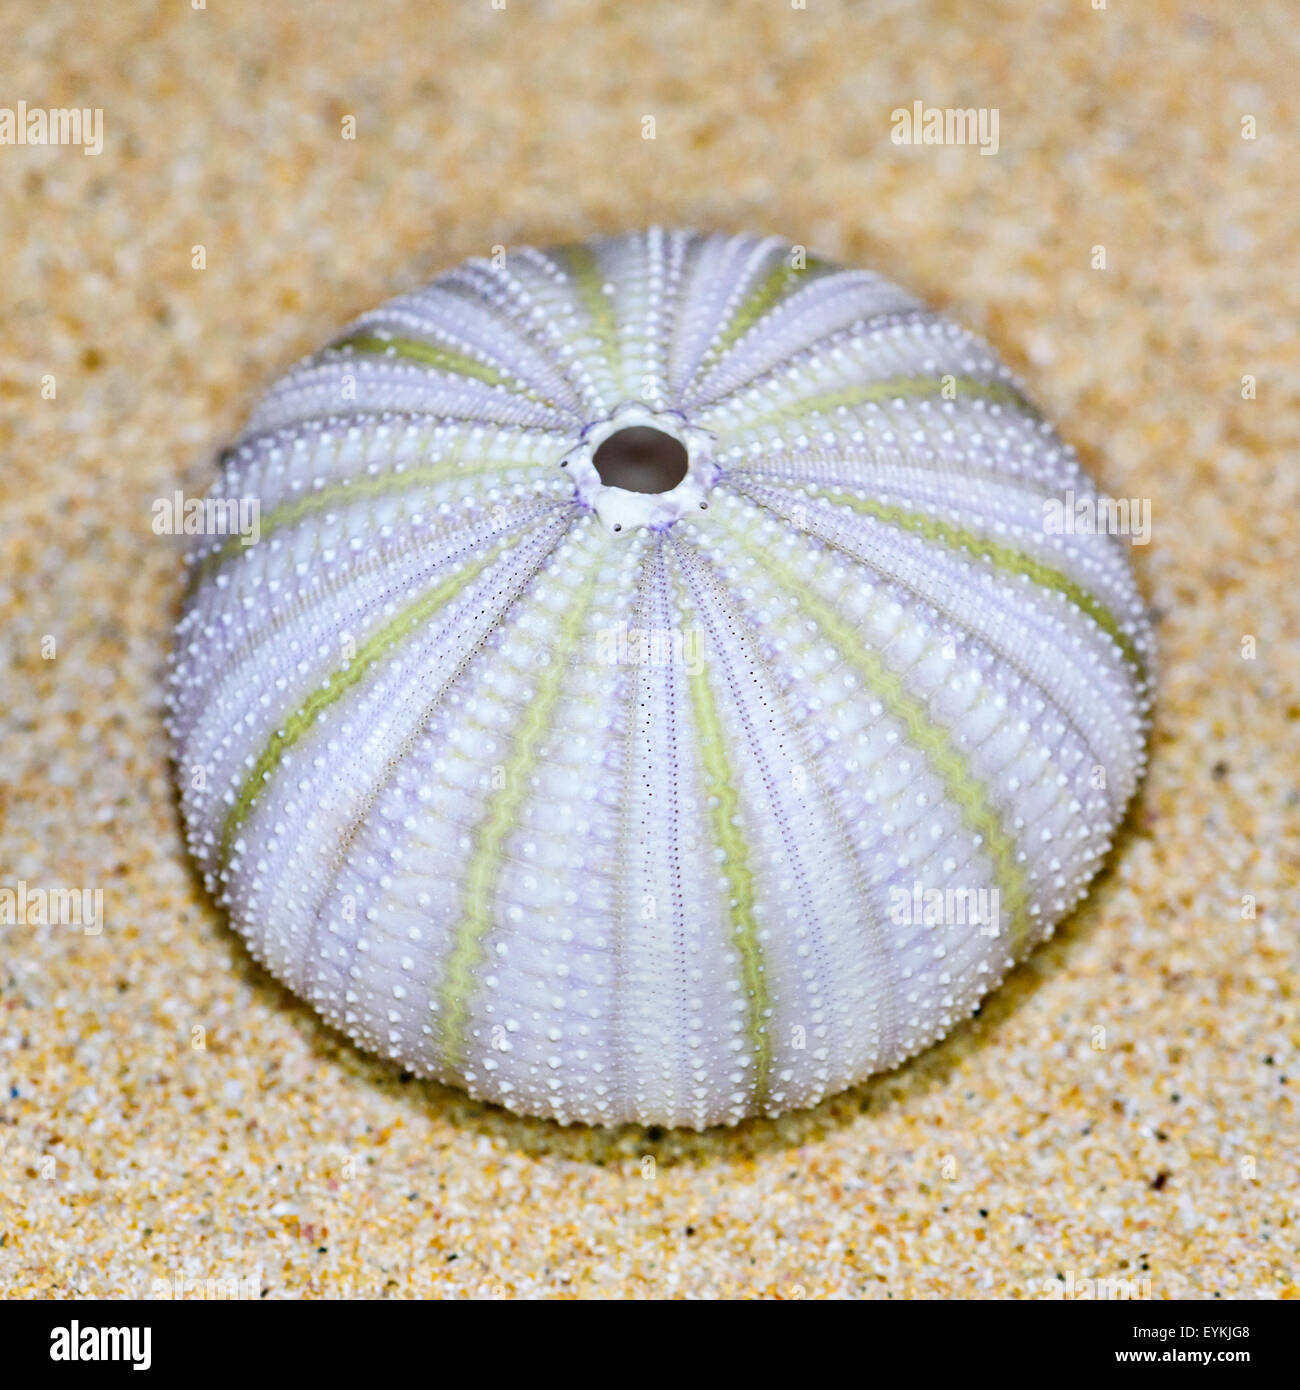 Guscio colorato di ricci di mare o di Urchin è rotondo e spinose con il bianco e il verde sulla sabbia Foto Stock